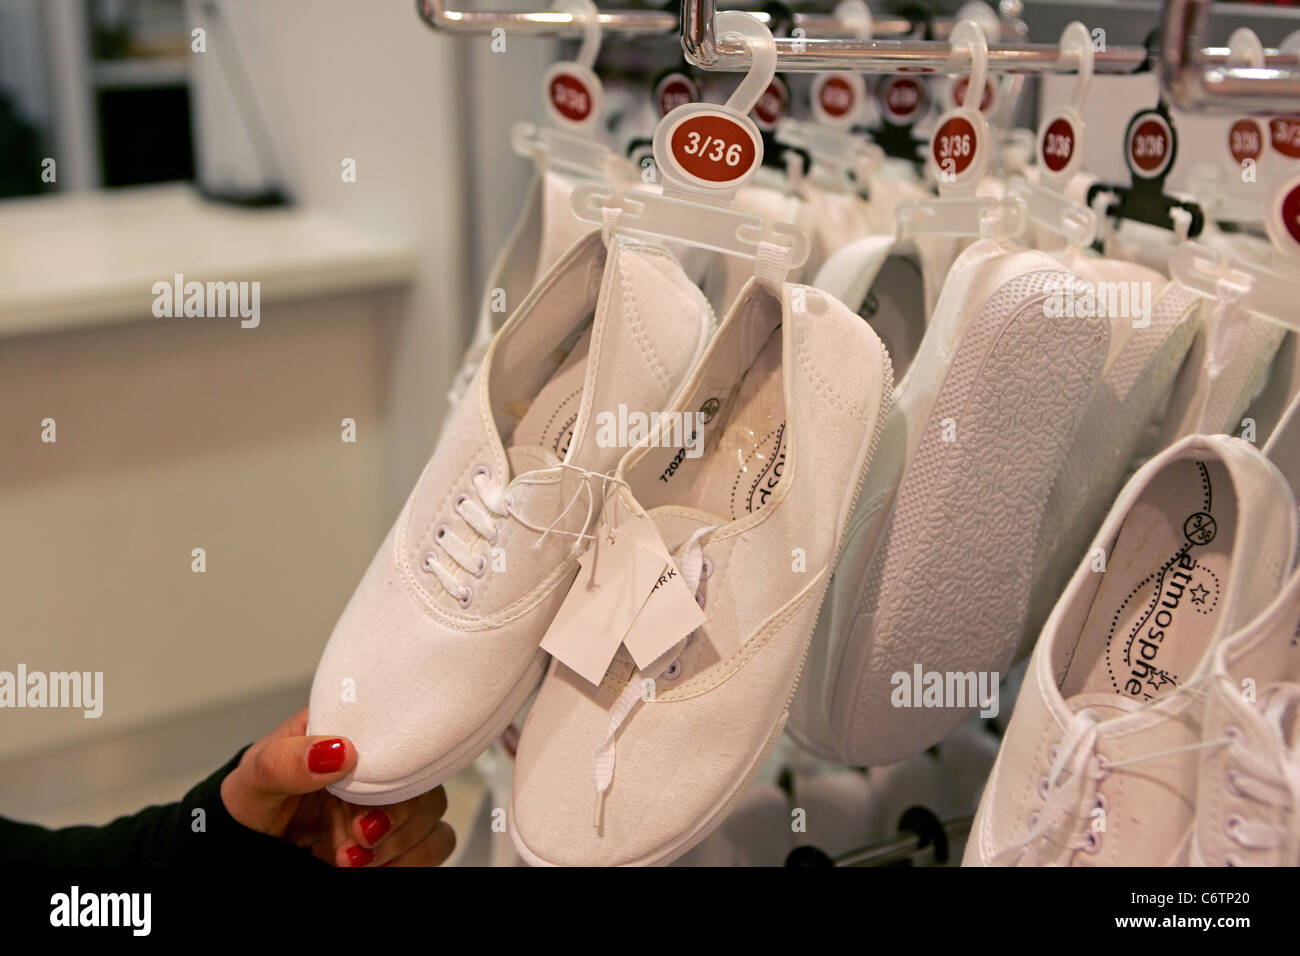 Primark shoes immagini e fotografie stock ad alta risoluzione - Alamy